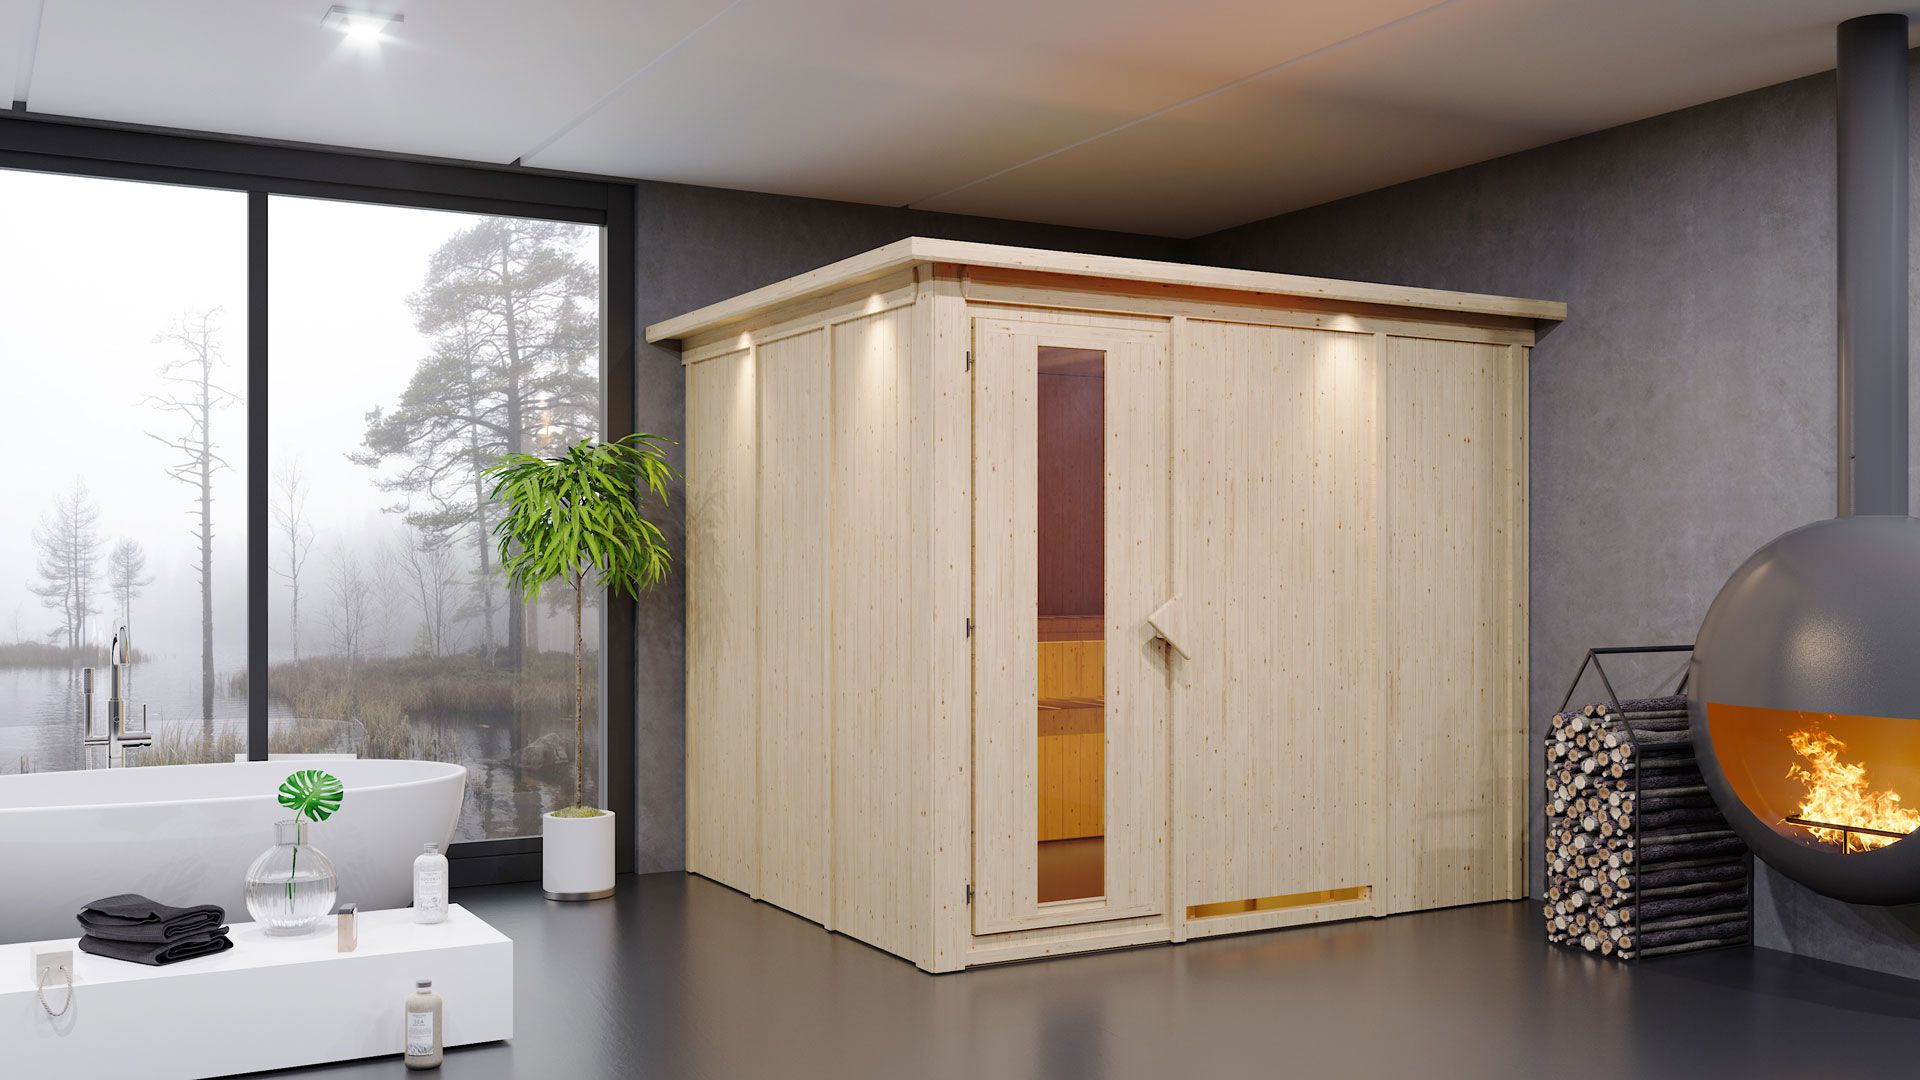 Sauna "Toivo" SET met energiebesparende deur en kroon - kleur: naturel, kachel 9 kW, klimaatmeter, zandloper, badreglement - 245 x 210 x 202 cm (B x D x H)